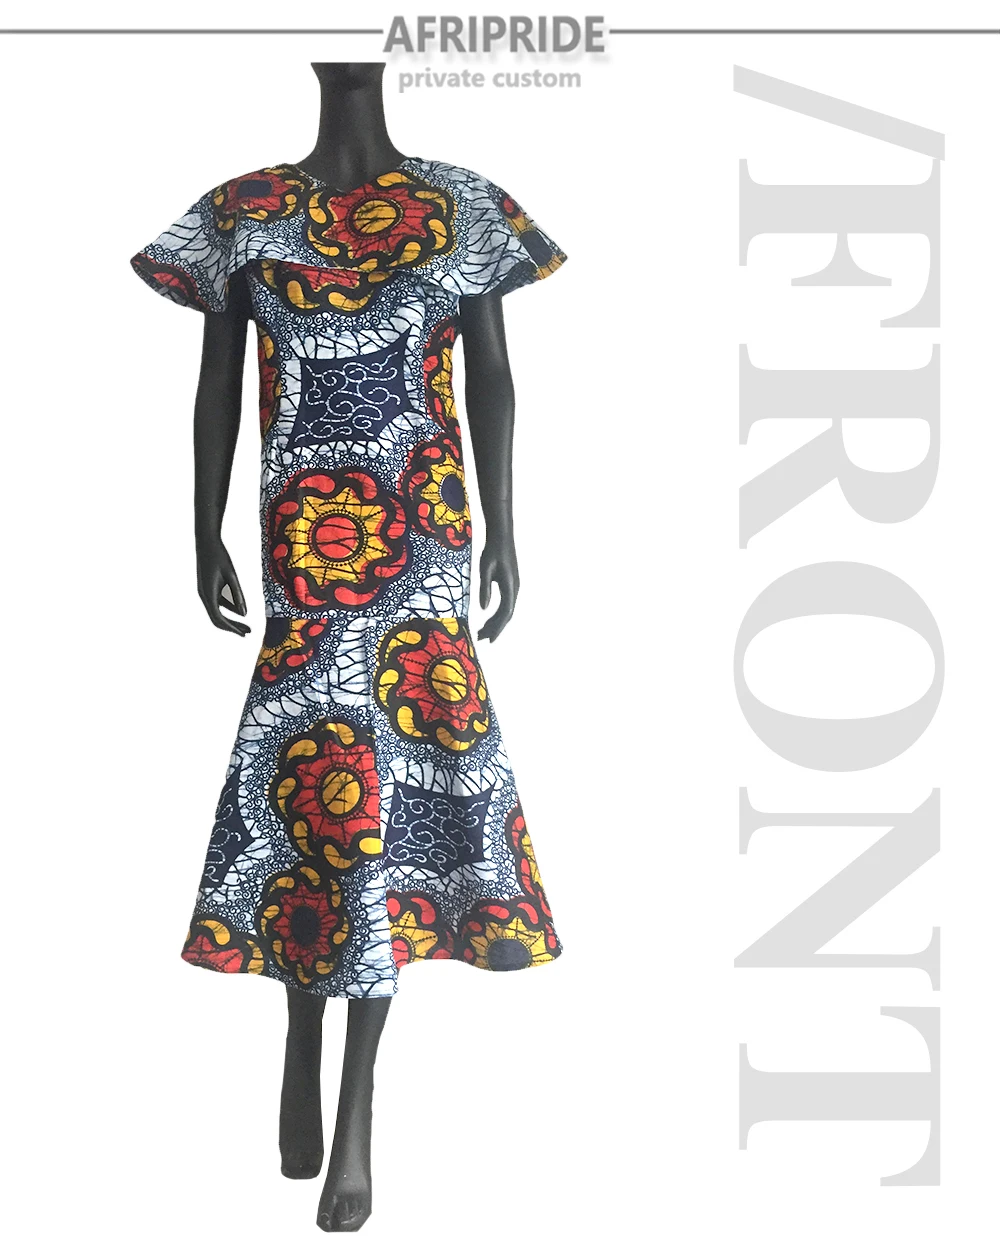 Женское платье в африканском стиле AFRIPRIDE, индивидуальный заказ, Осеннее Новое модное длинное вечернее платье, длина по щиколотку, восковая ткань, большие размеры, A722554